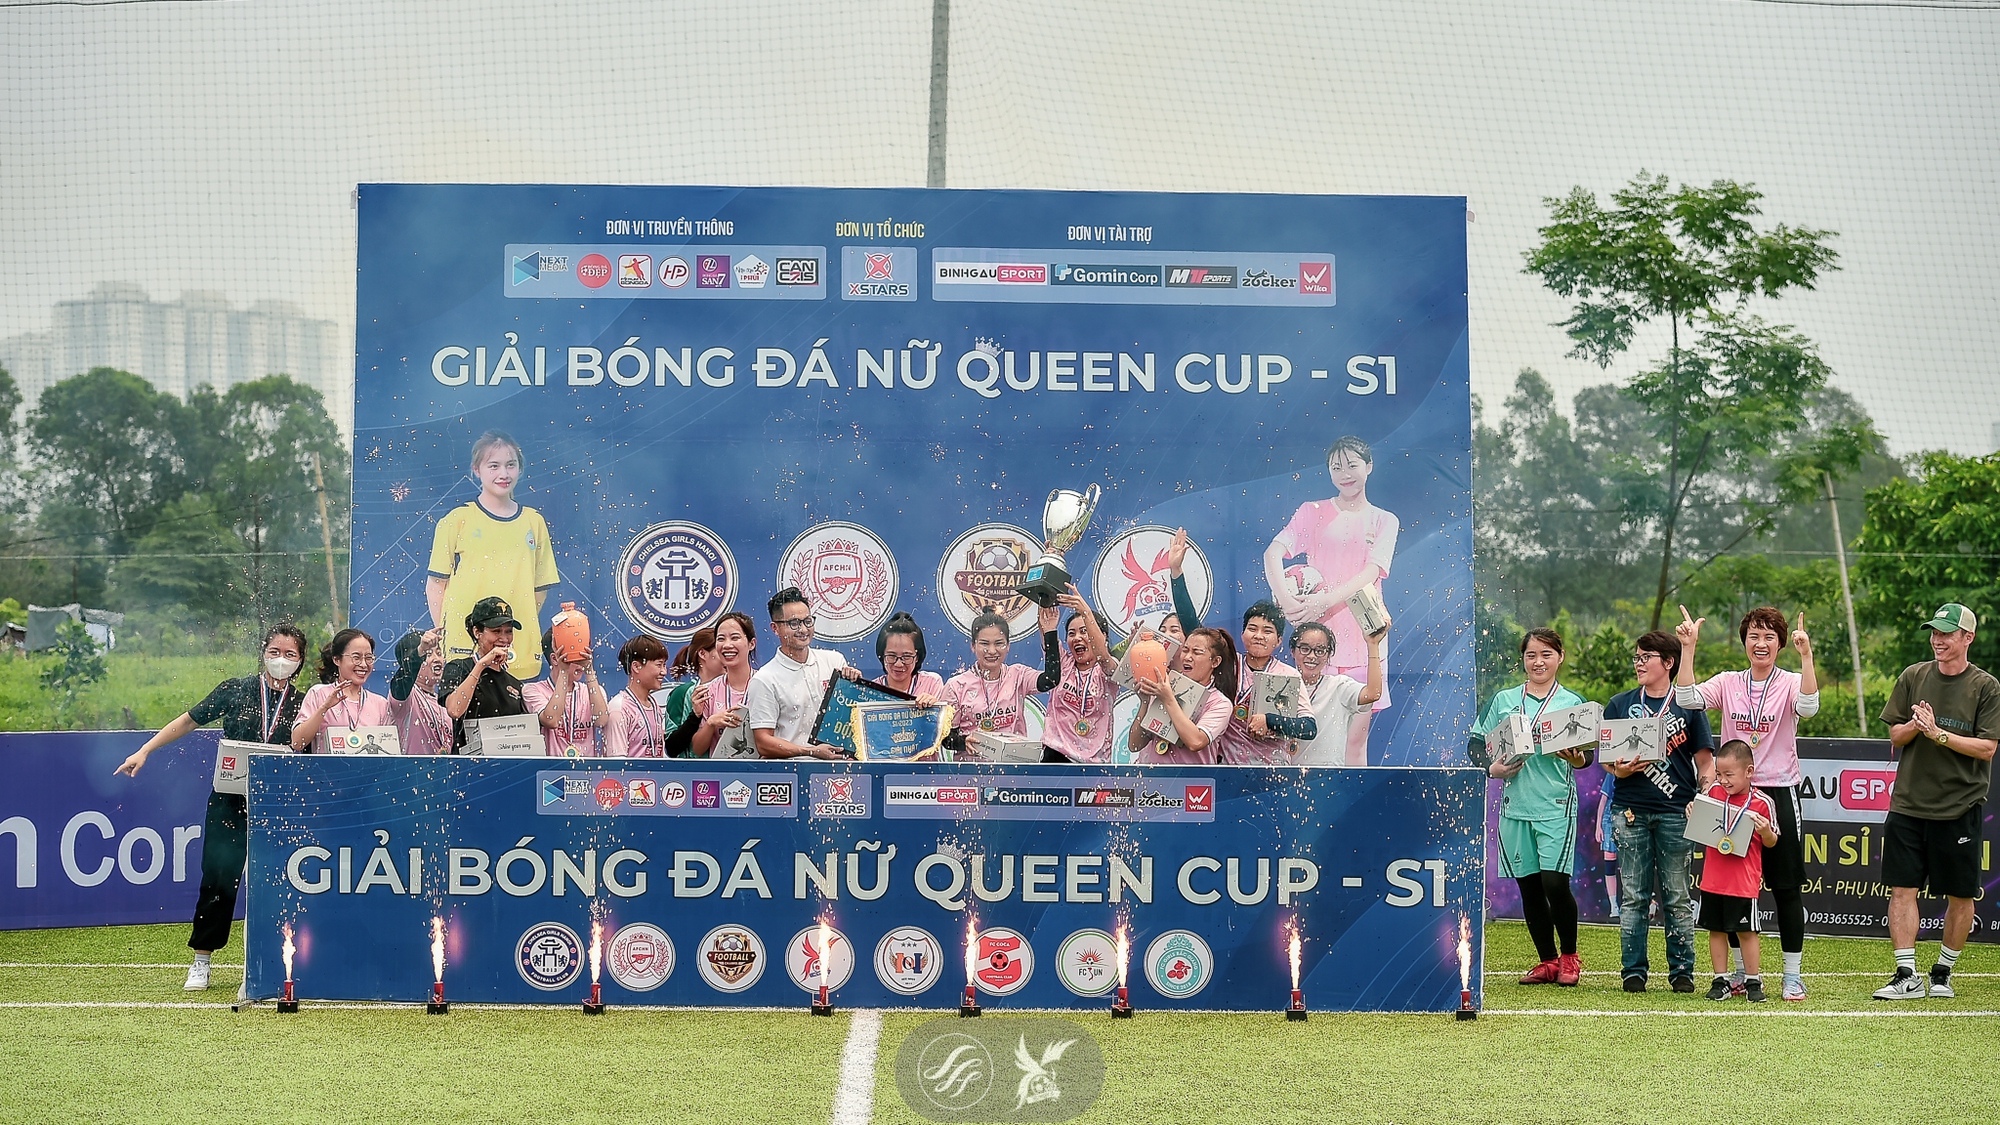 Hành trình chinh phục ngôi vương của FC Việt Ý tại giải bóng đá Queen Cup S1 - Ảnh 7.